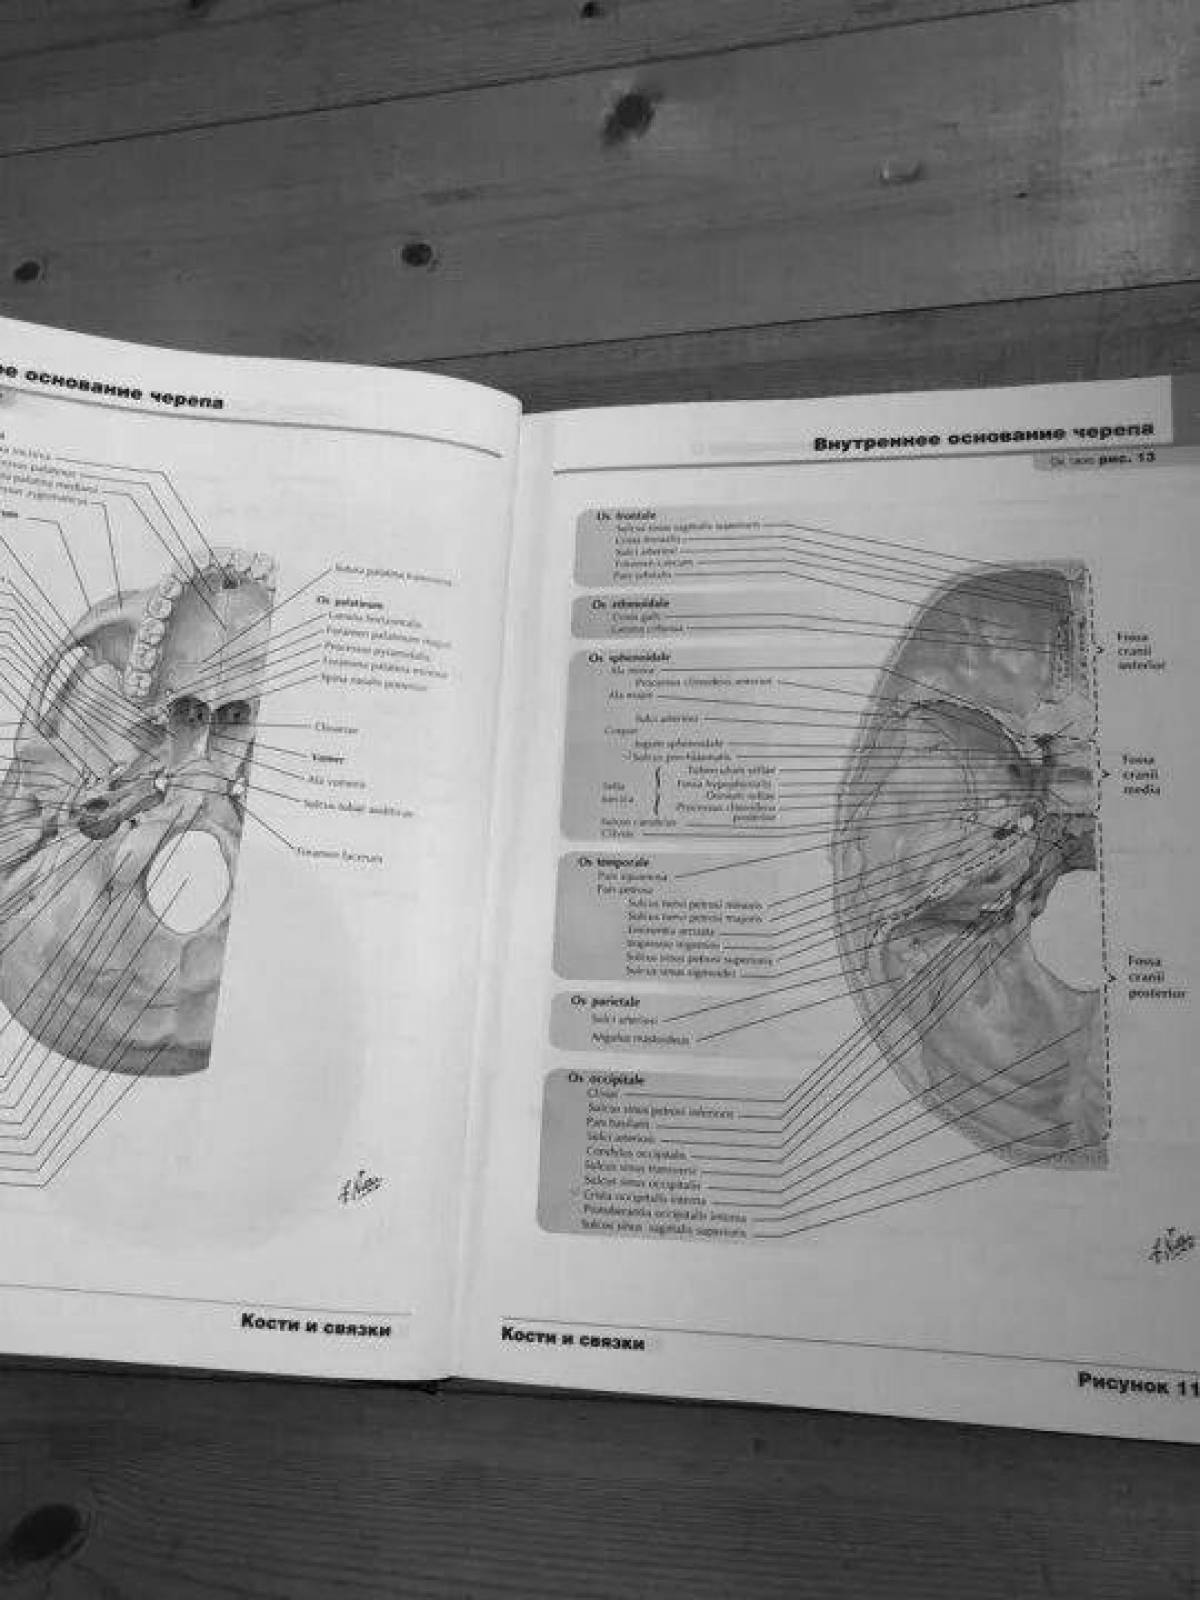 Атлас раскраска неттера. Анатомия раскраска Неттера. Анатомия атлас раскраска. Анатомия раскраска книга.